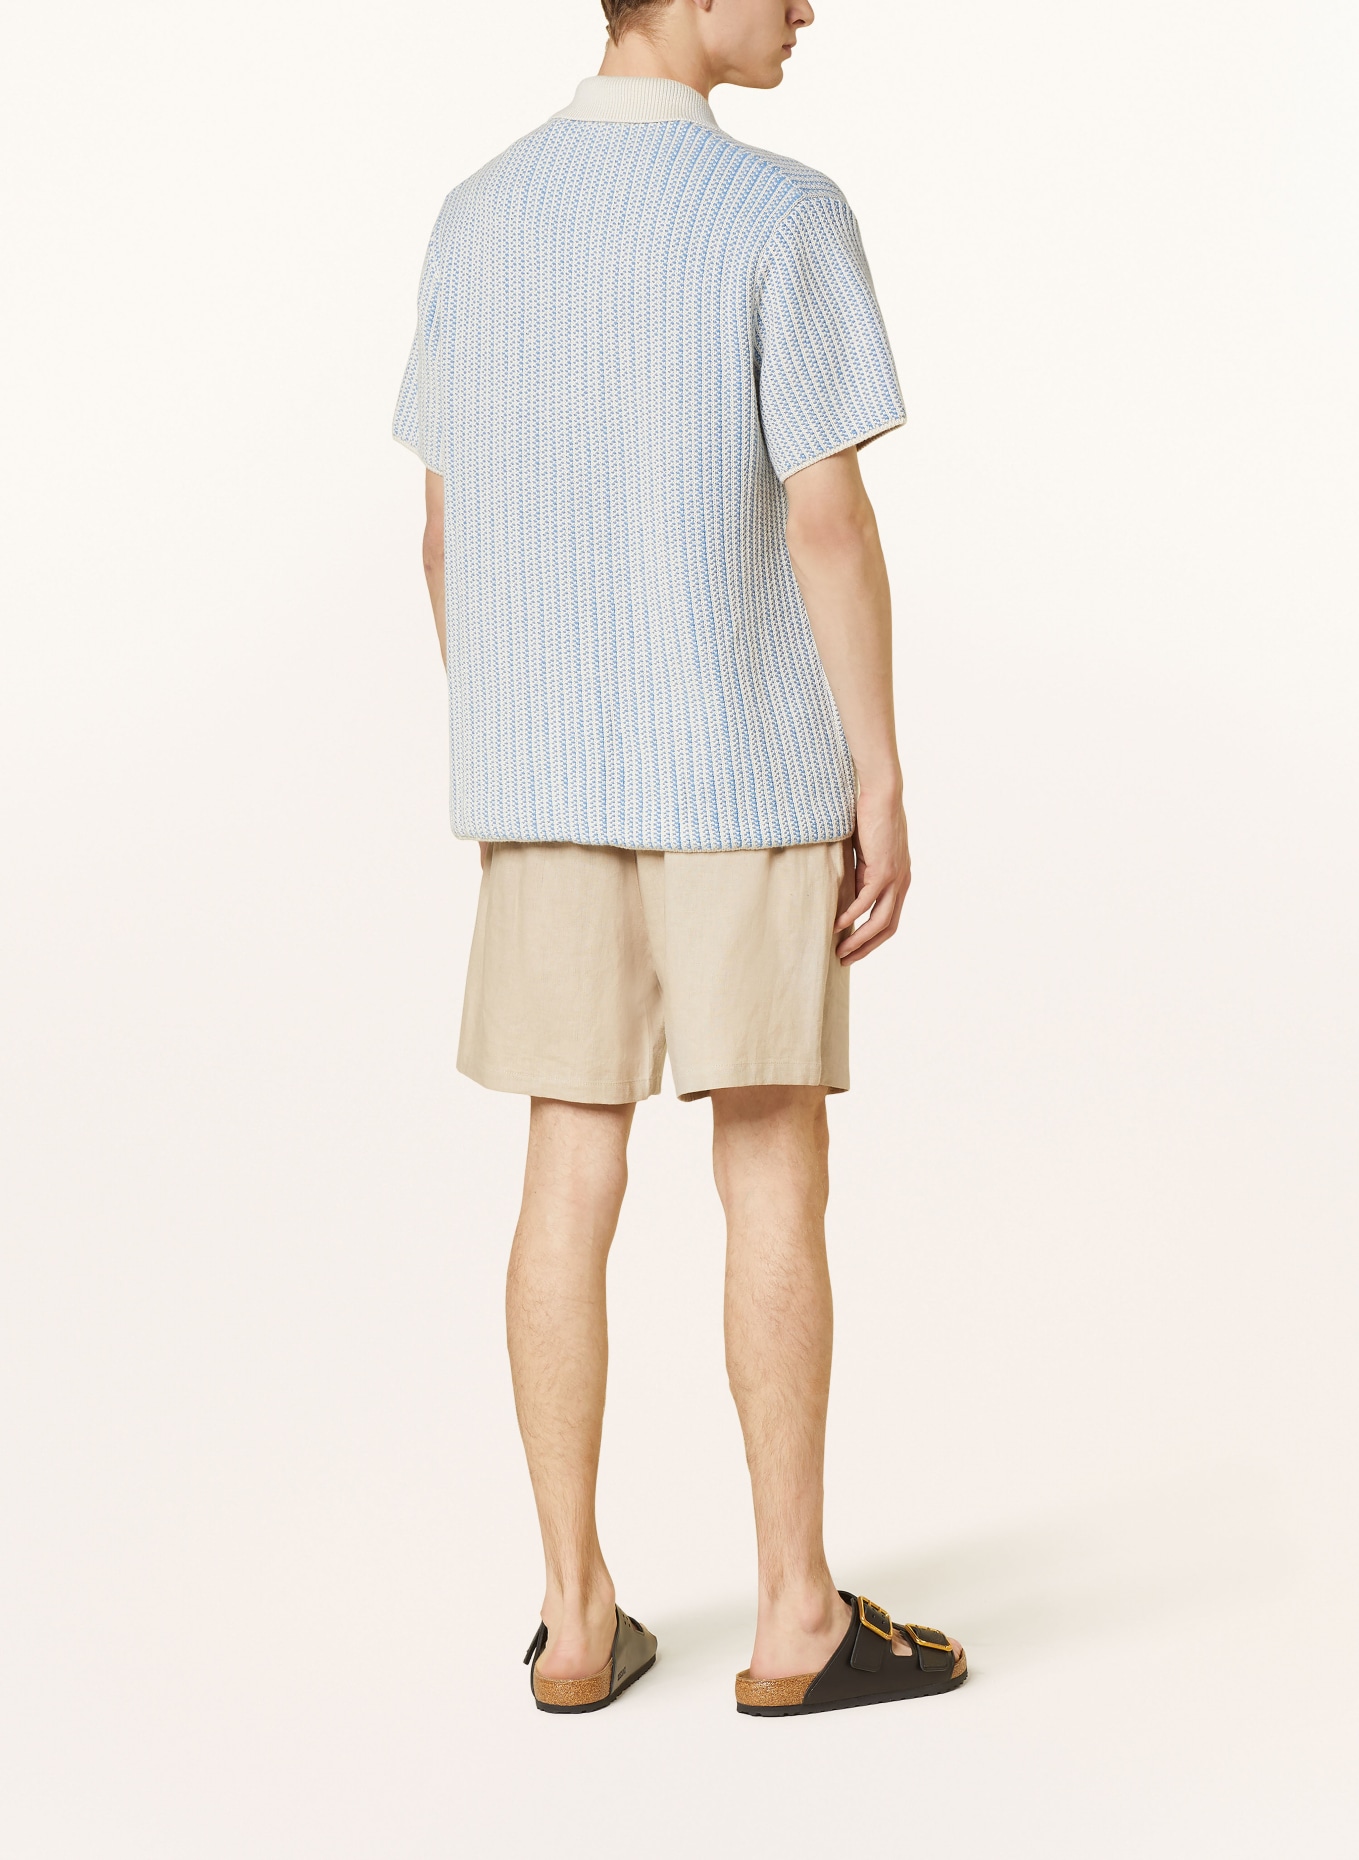 LES DEUX Short sleeve shirt comfort fit, Color: BLUE/ ECRU (Image 3)